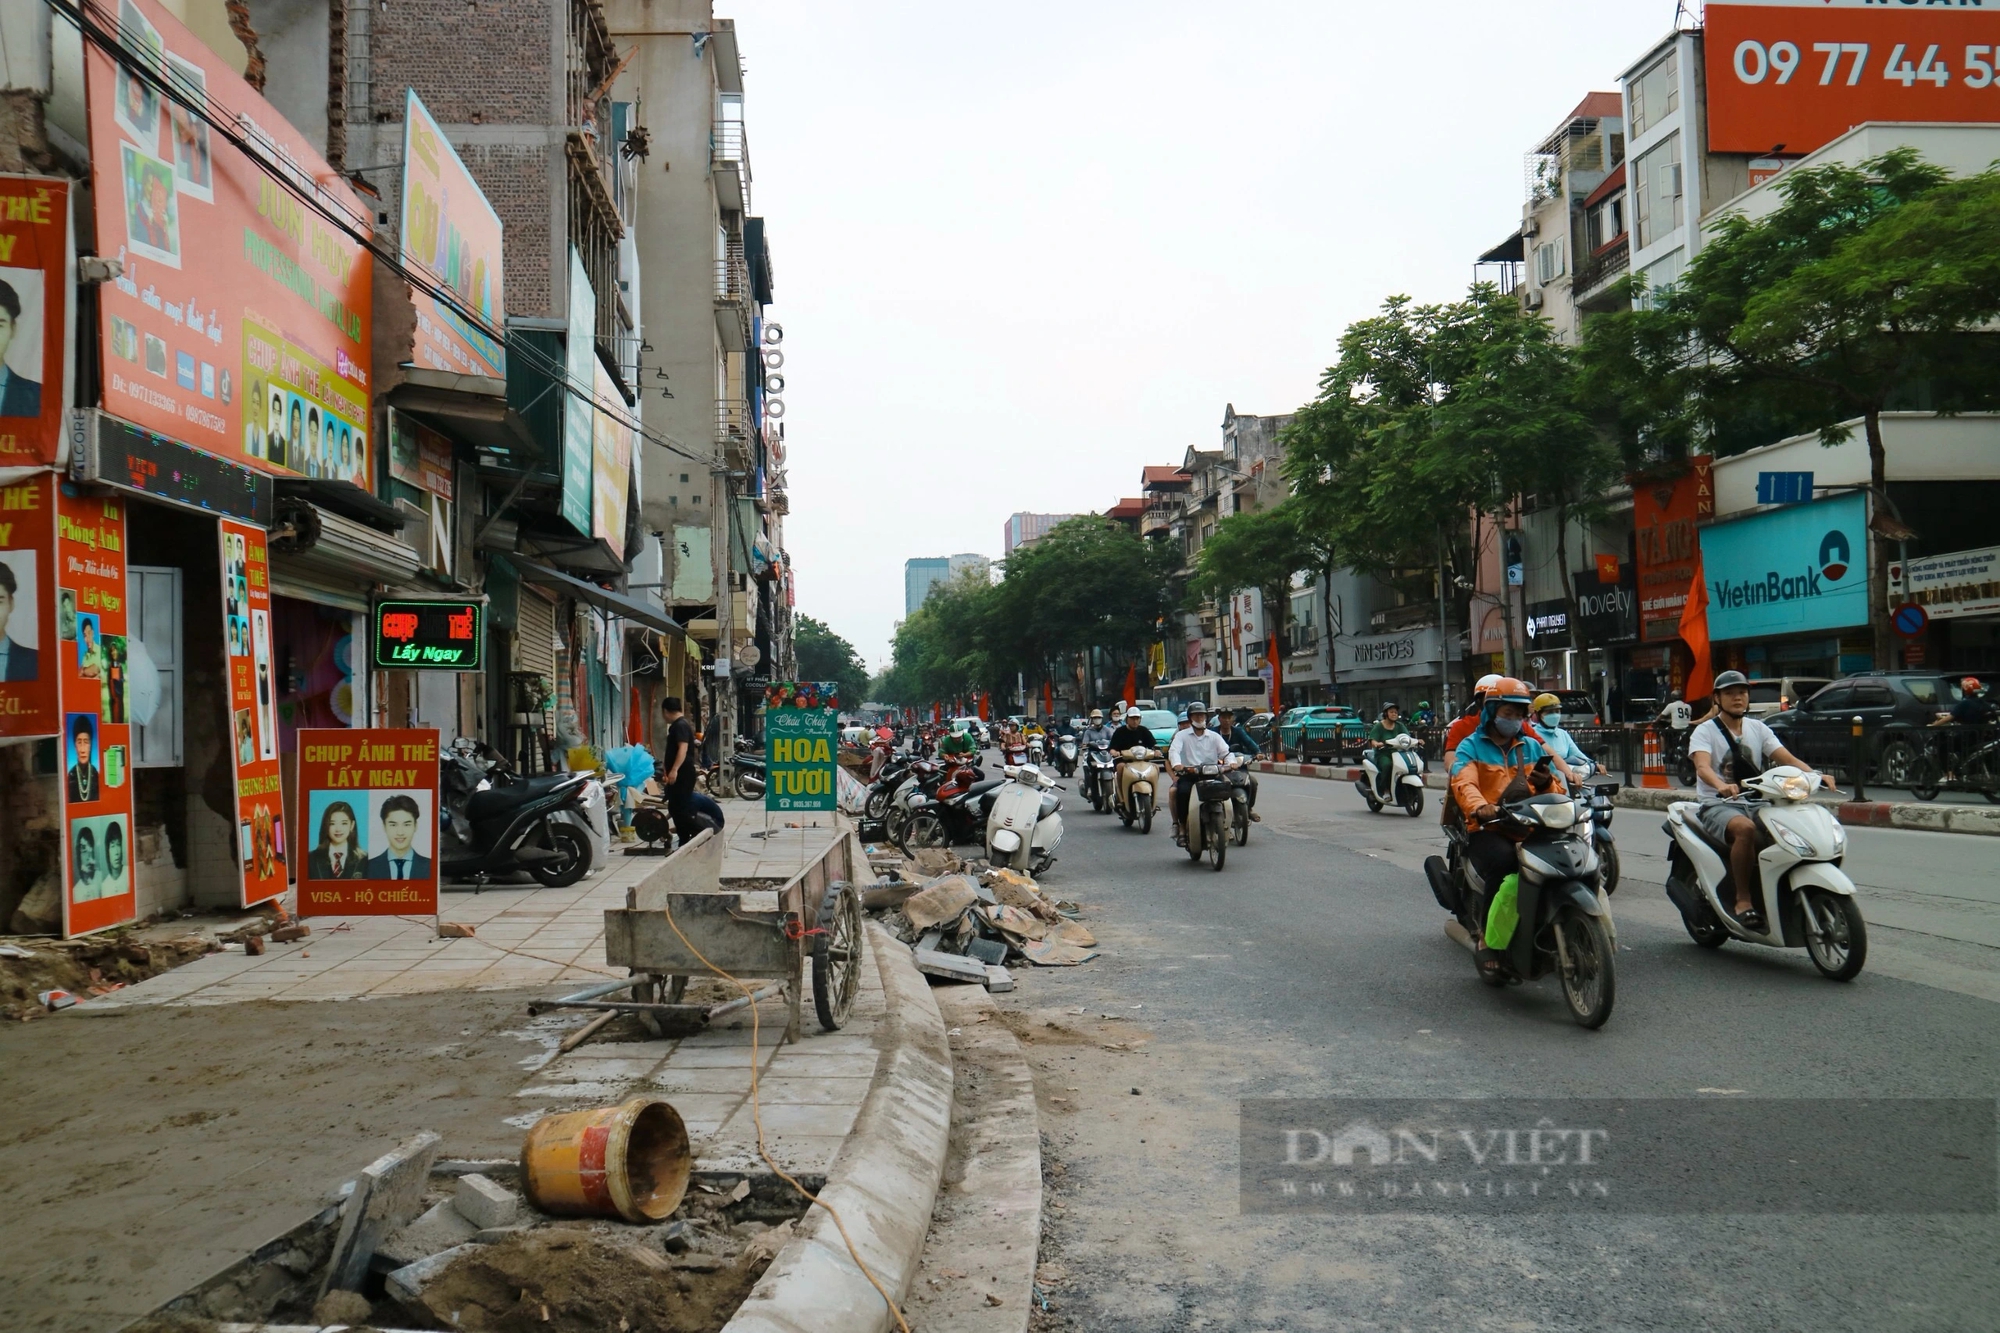 Dự án cải tạo nút giao thông Chùa Bộc – Thái Hà, gần hoàn thiện sau hàng chục năm triển khai- Ảnh 3.